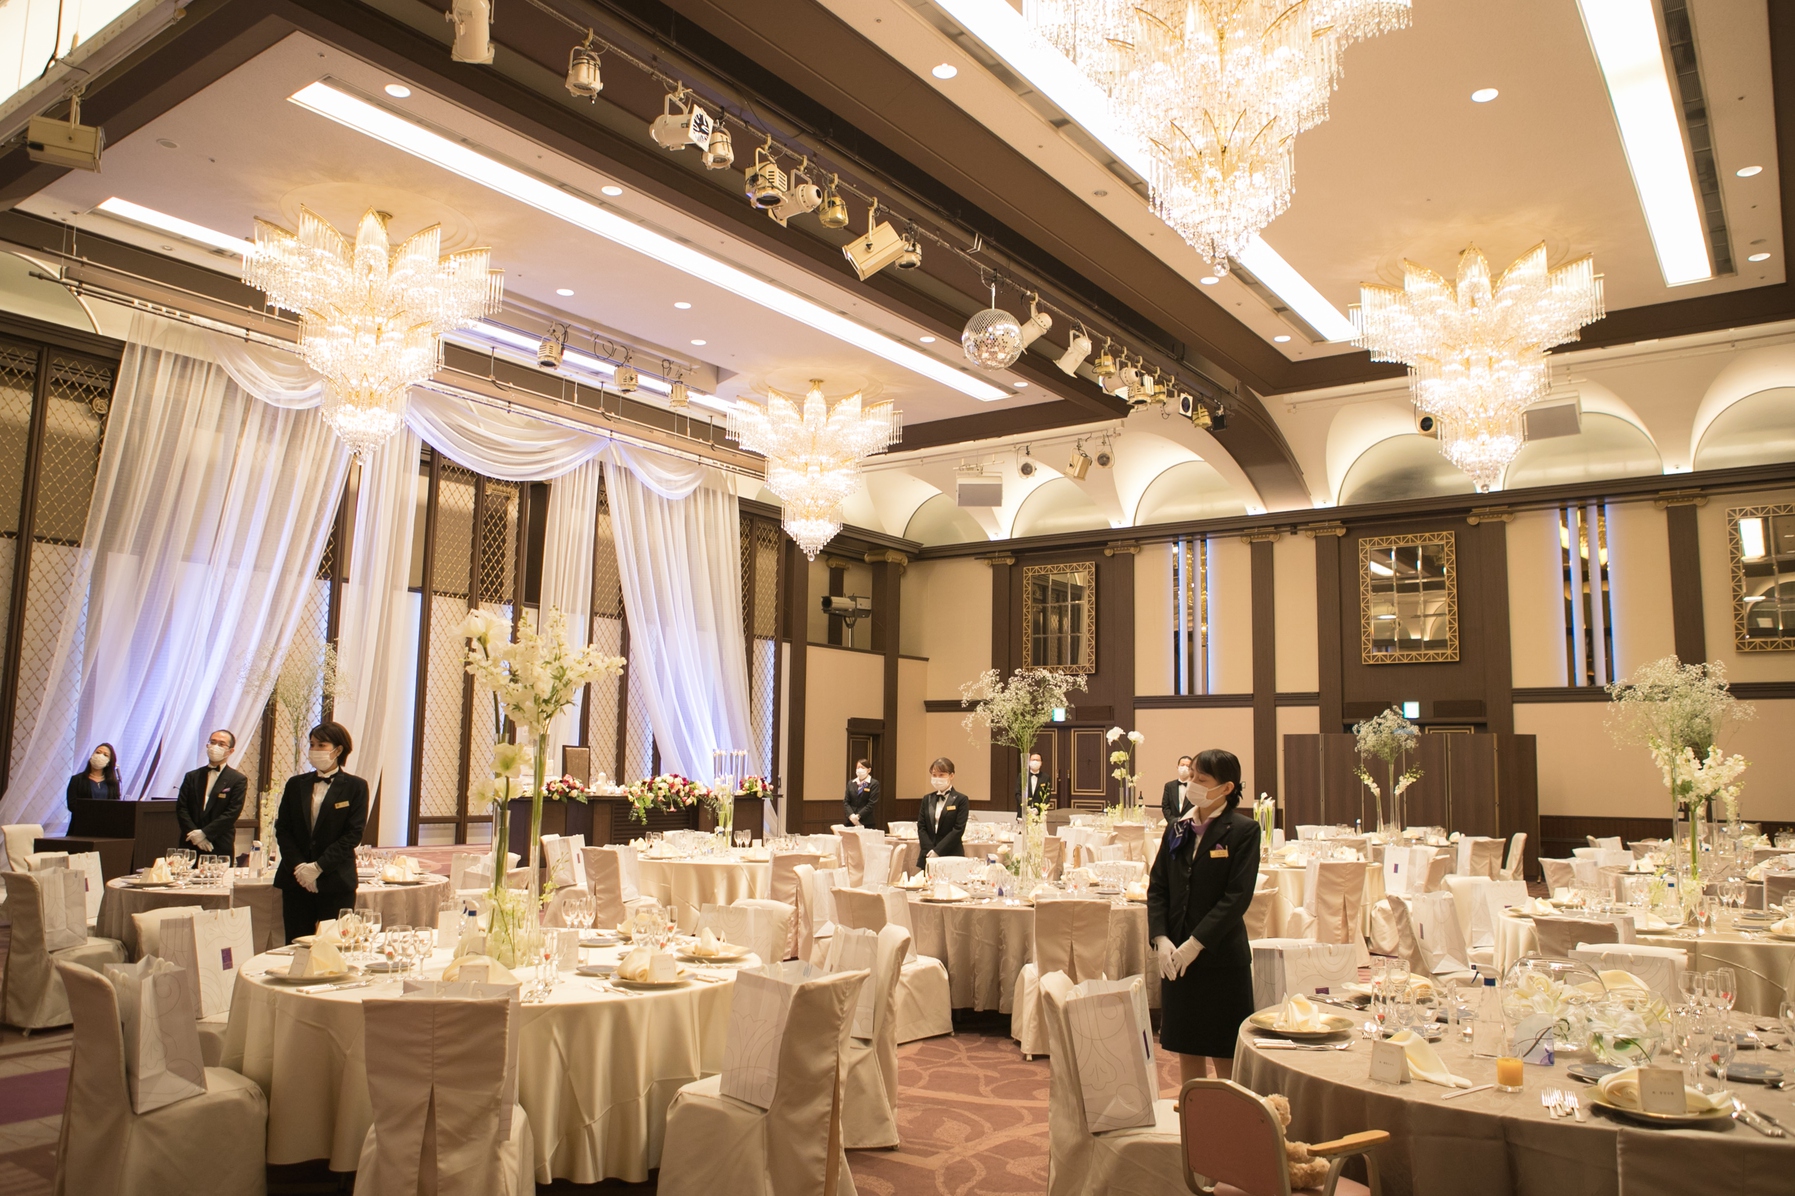 ホテル阪急インターナショナルで結婚式 結婚式場探しはウェディングニュース